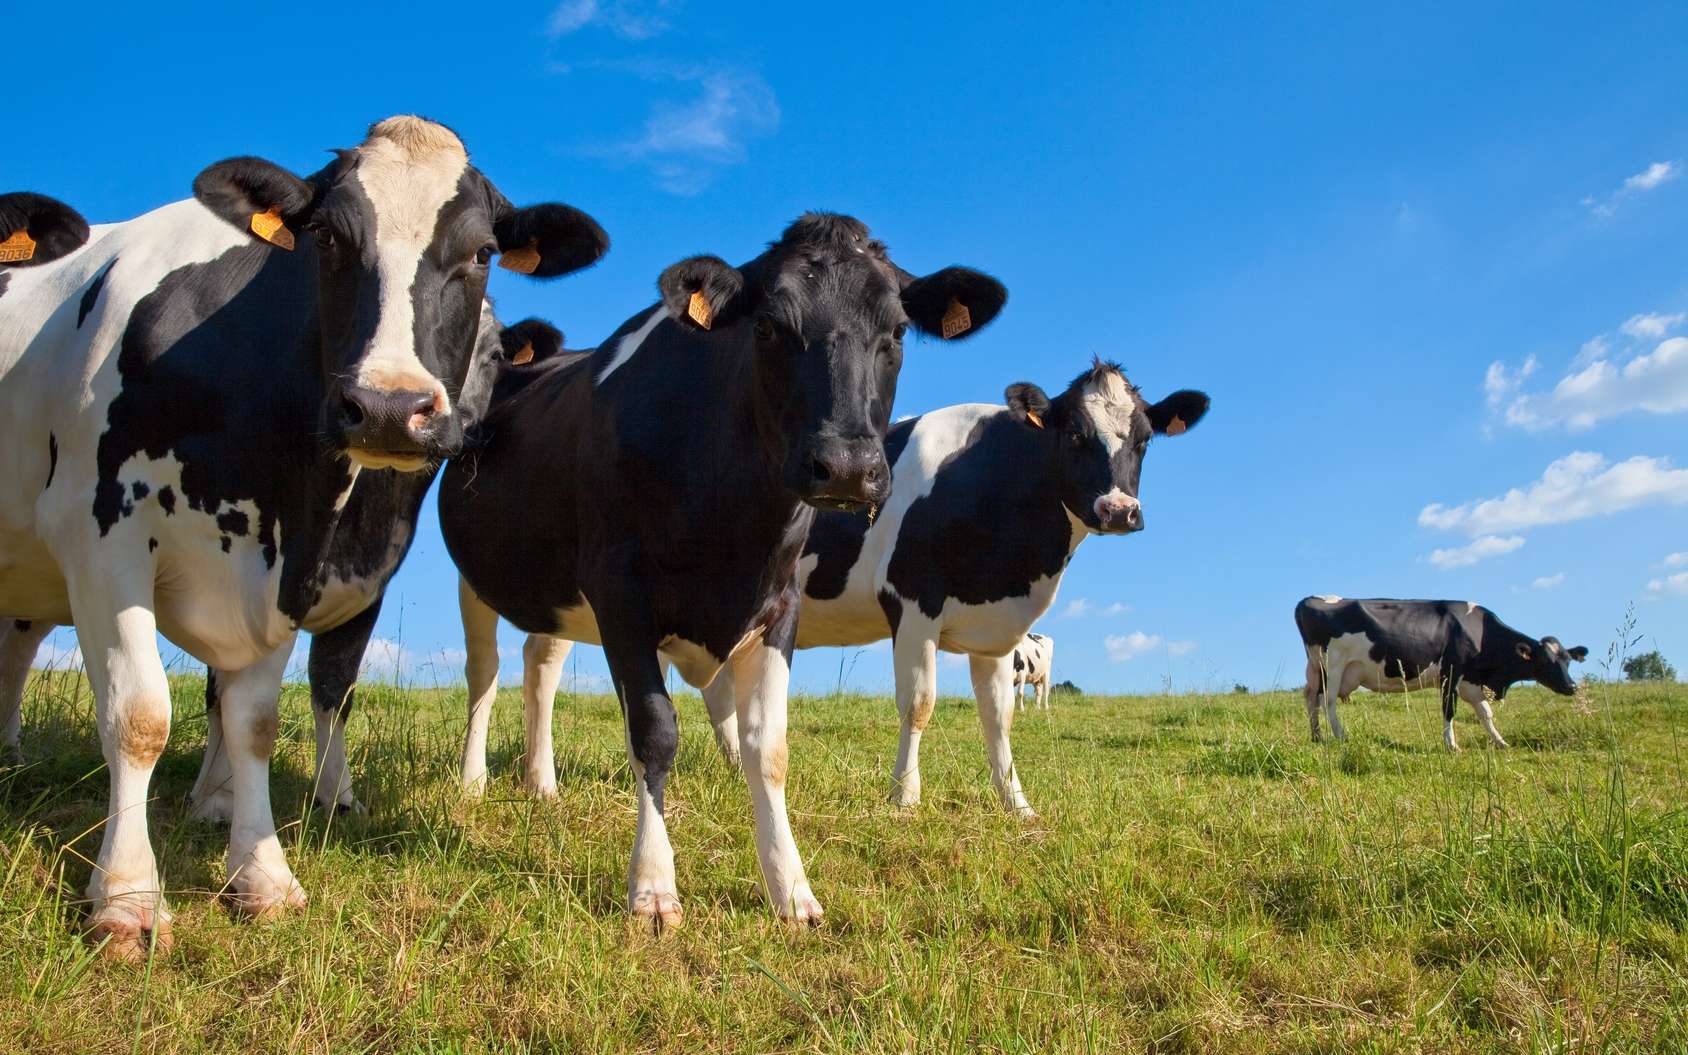 Des vaches transgéniques bientôt dans les prés ? © Thierry Ryo, Fotolia test